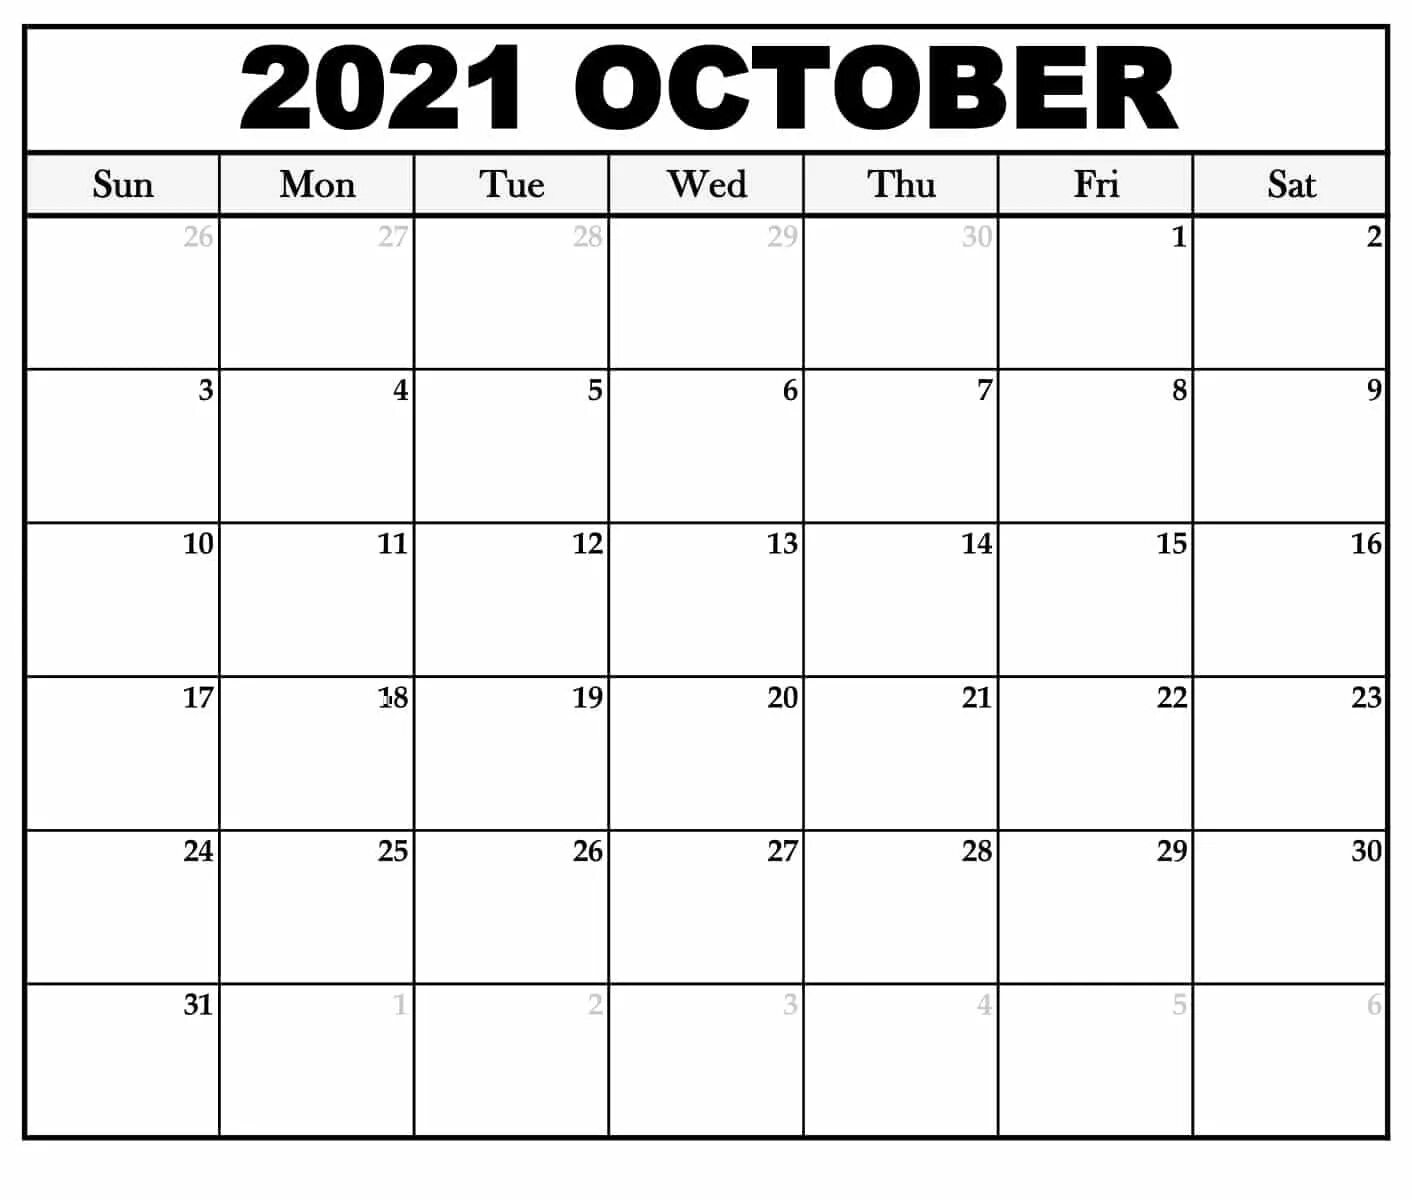 Календарь октябрь 2021. Календарь на октябрь 2021 года. Календарь октябрь ноябрь 2021. Календарь сентябрь октябрь 2021.